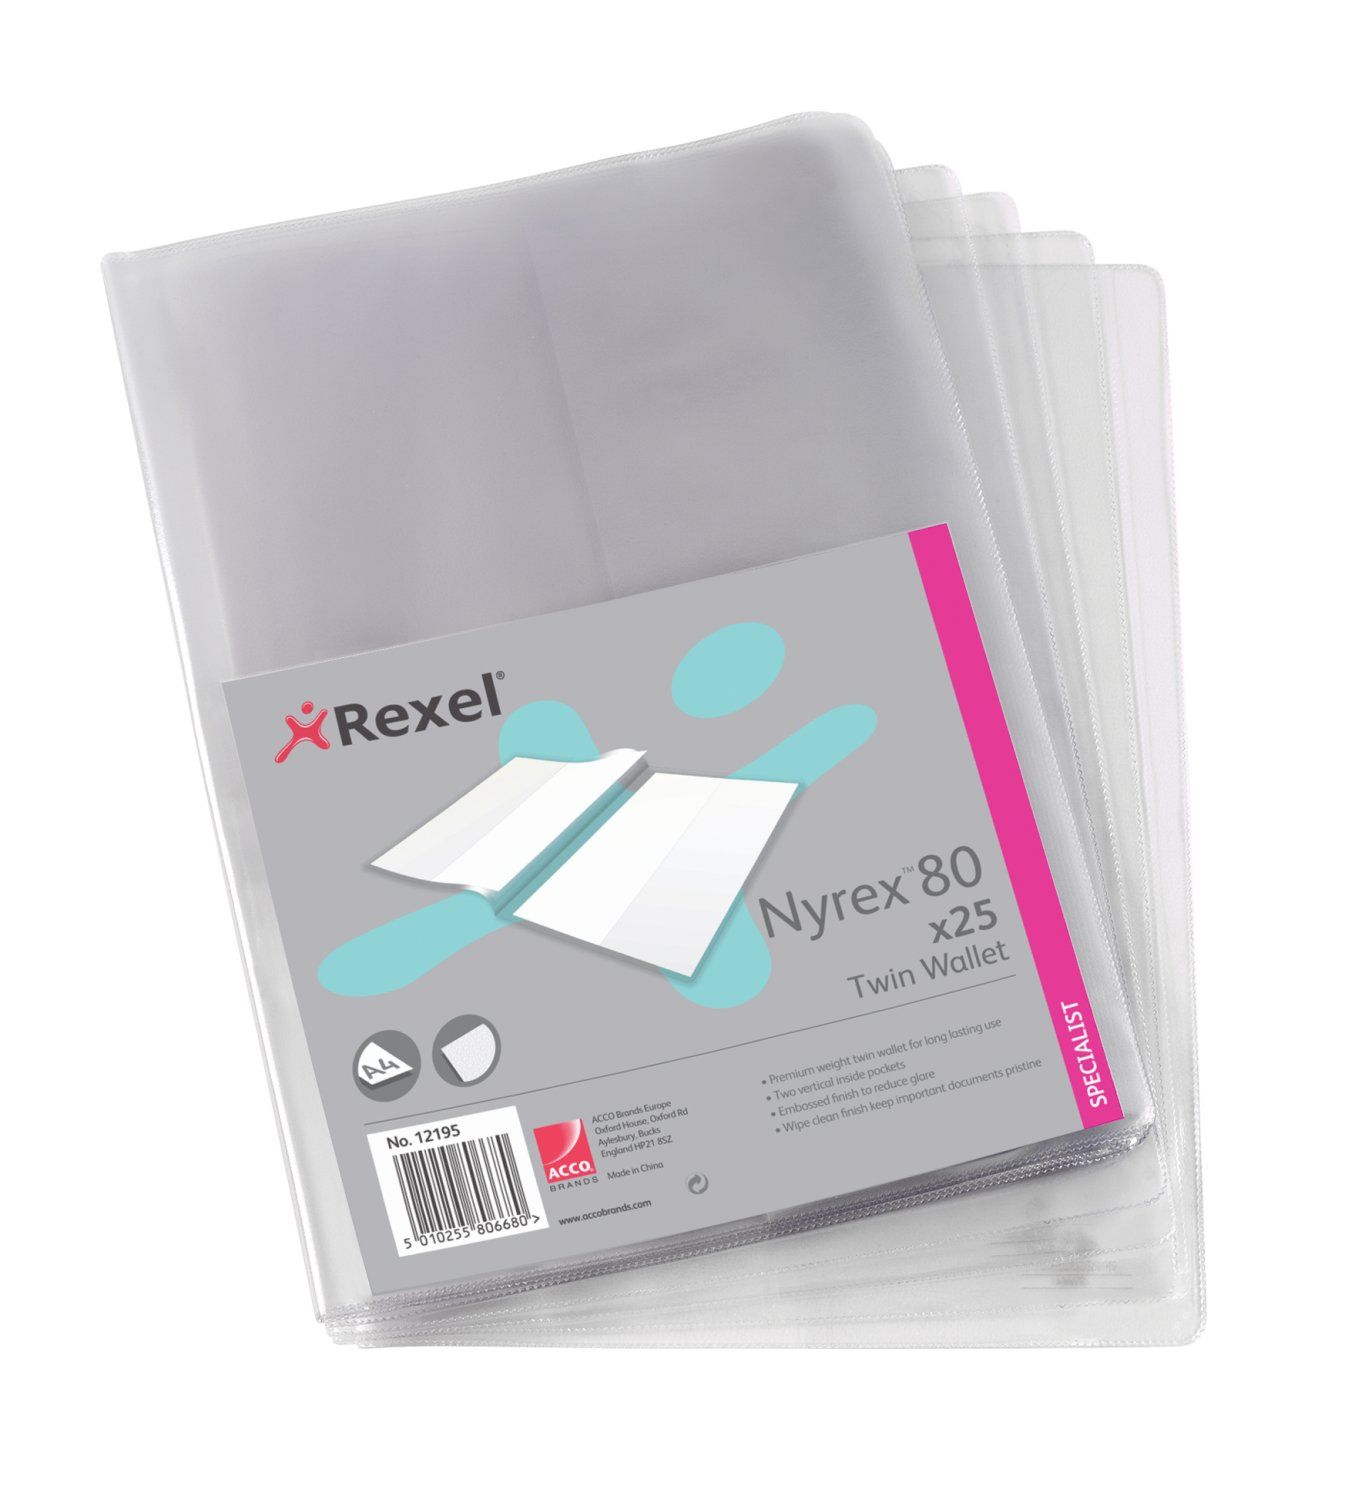 Rexel Nyrex Twin Wallet Clear PK25